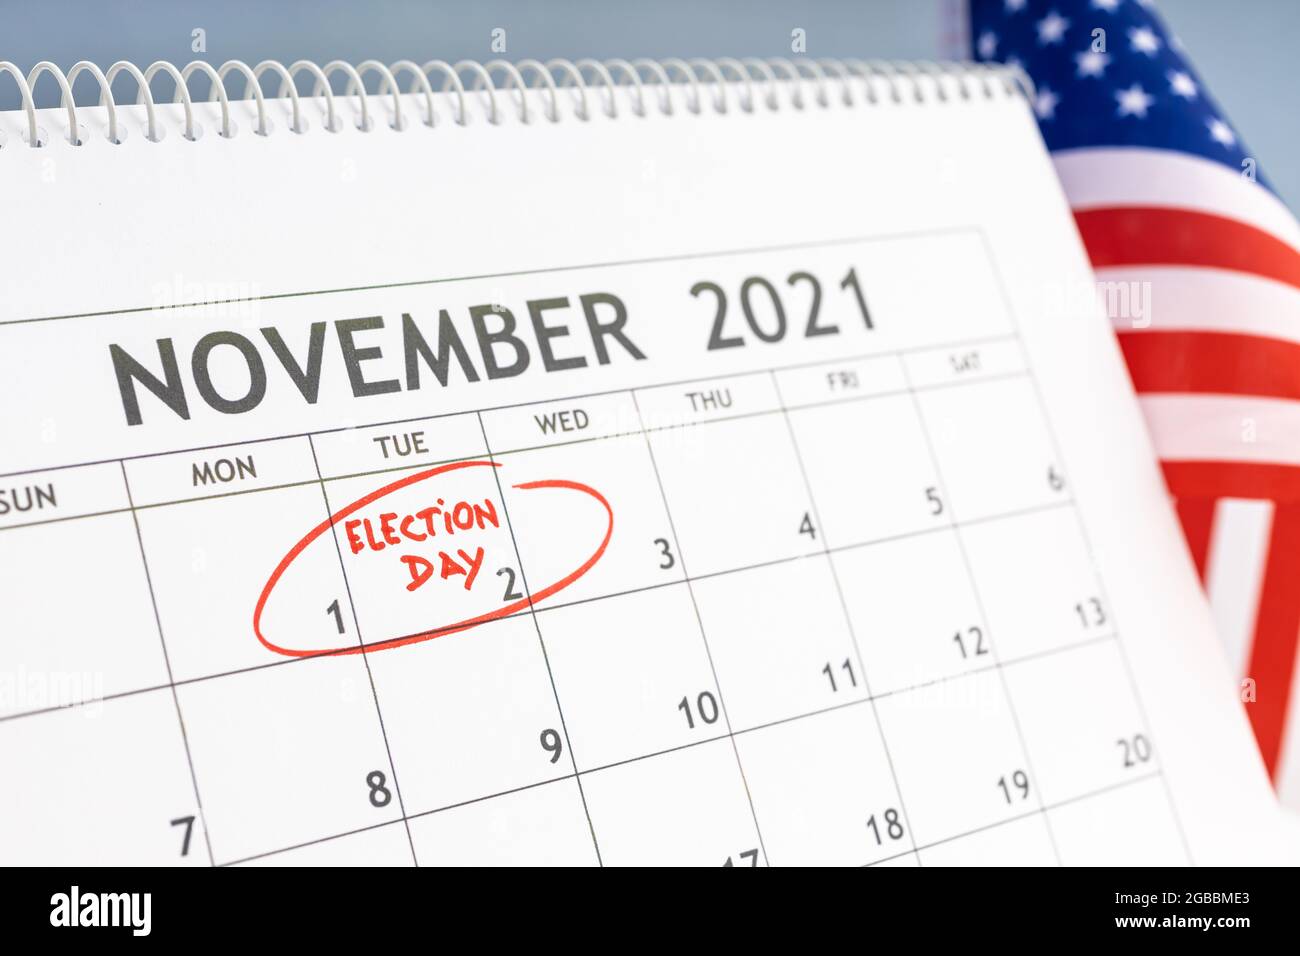 Noviembre 2021 Concepto del día de las elecciones en los Estados Unidos. Calendario de escritorio con el 2rd de noviembre marcado en rojo y bandera de EE.UU. En el fondo Foto de stock